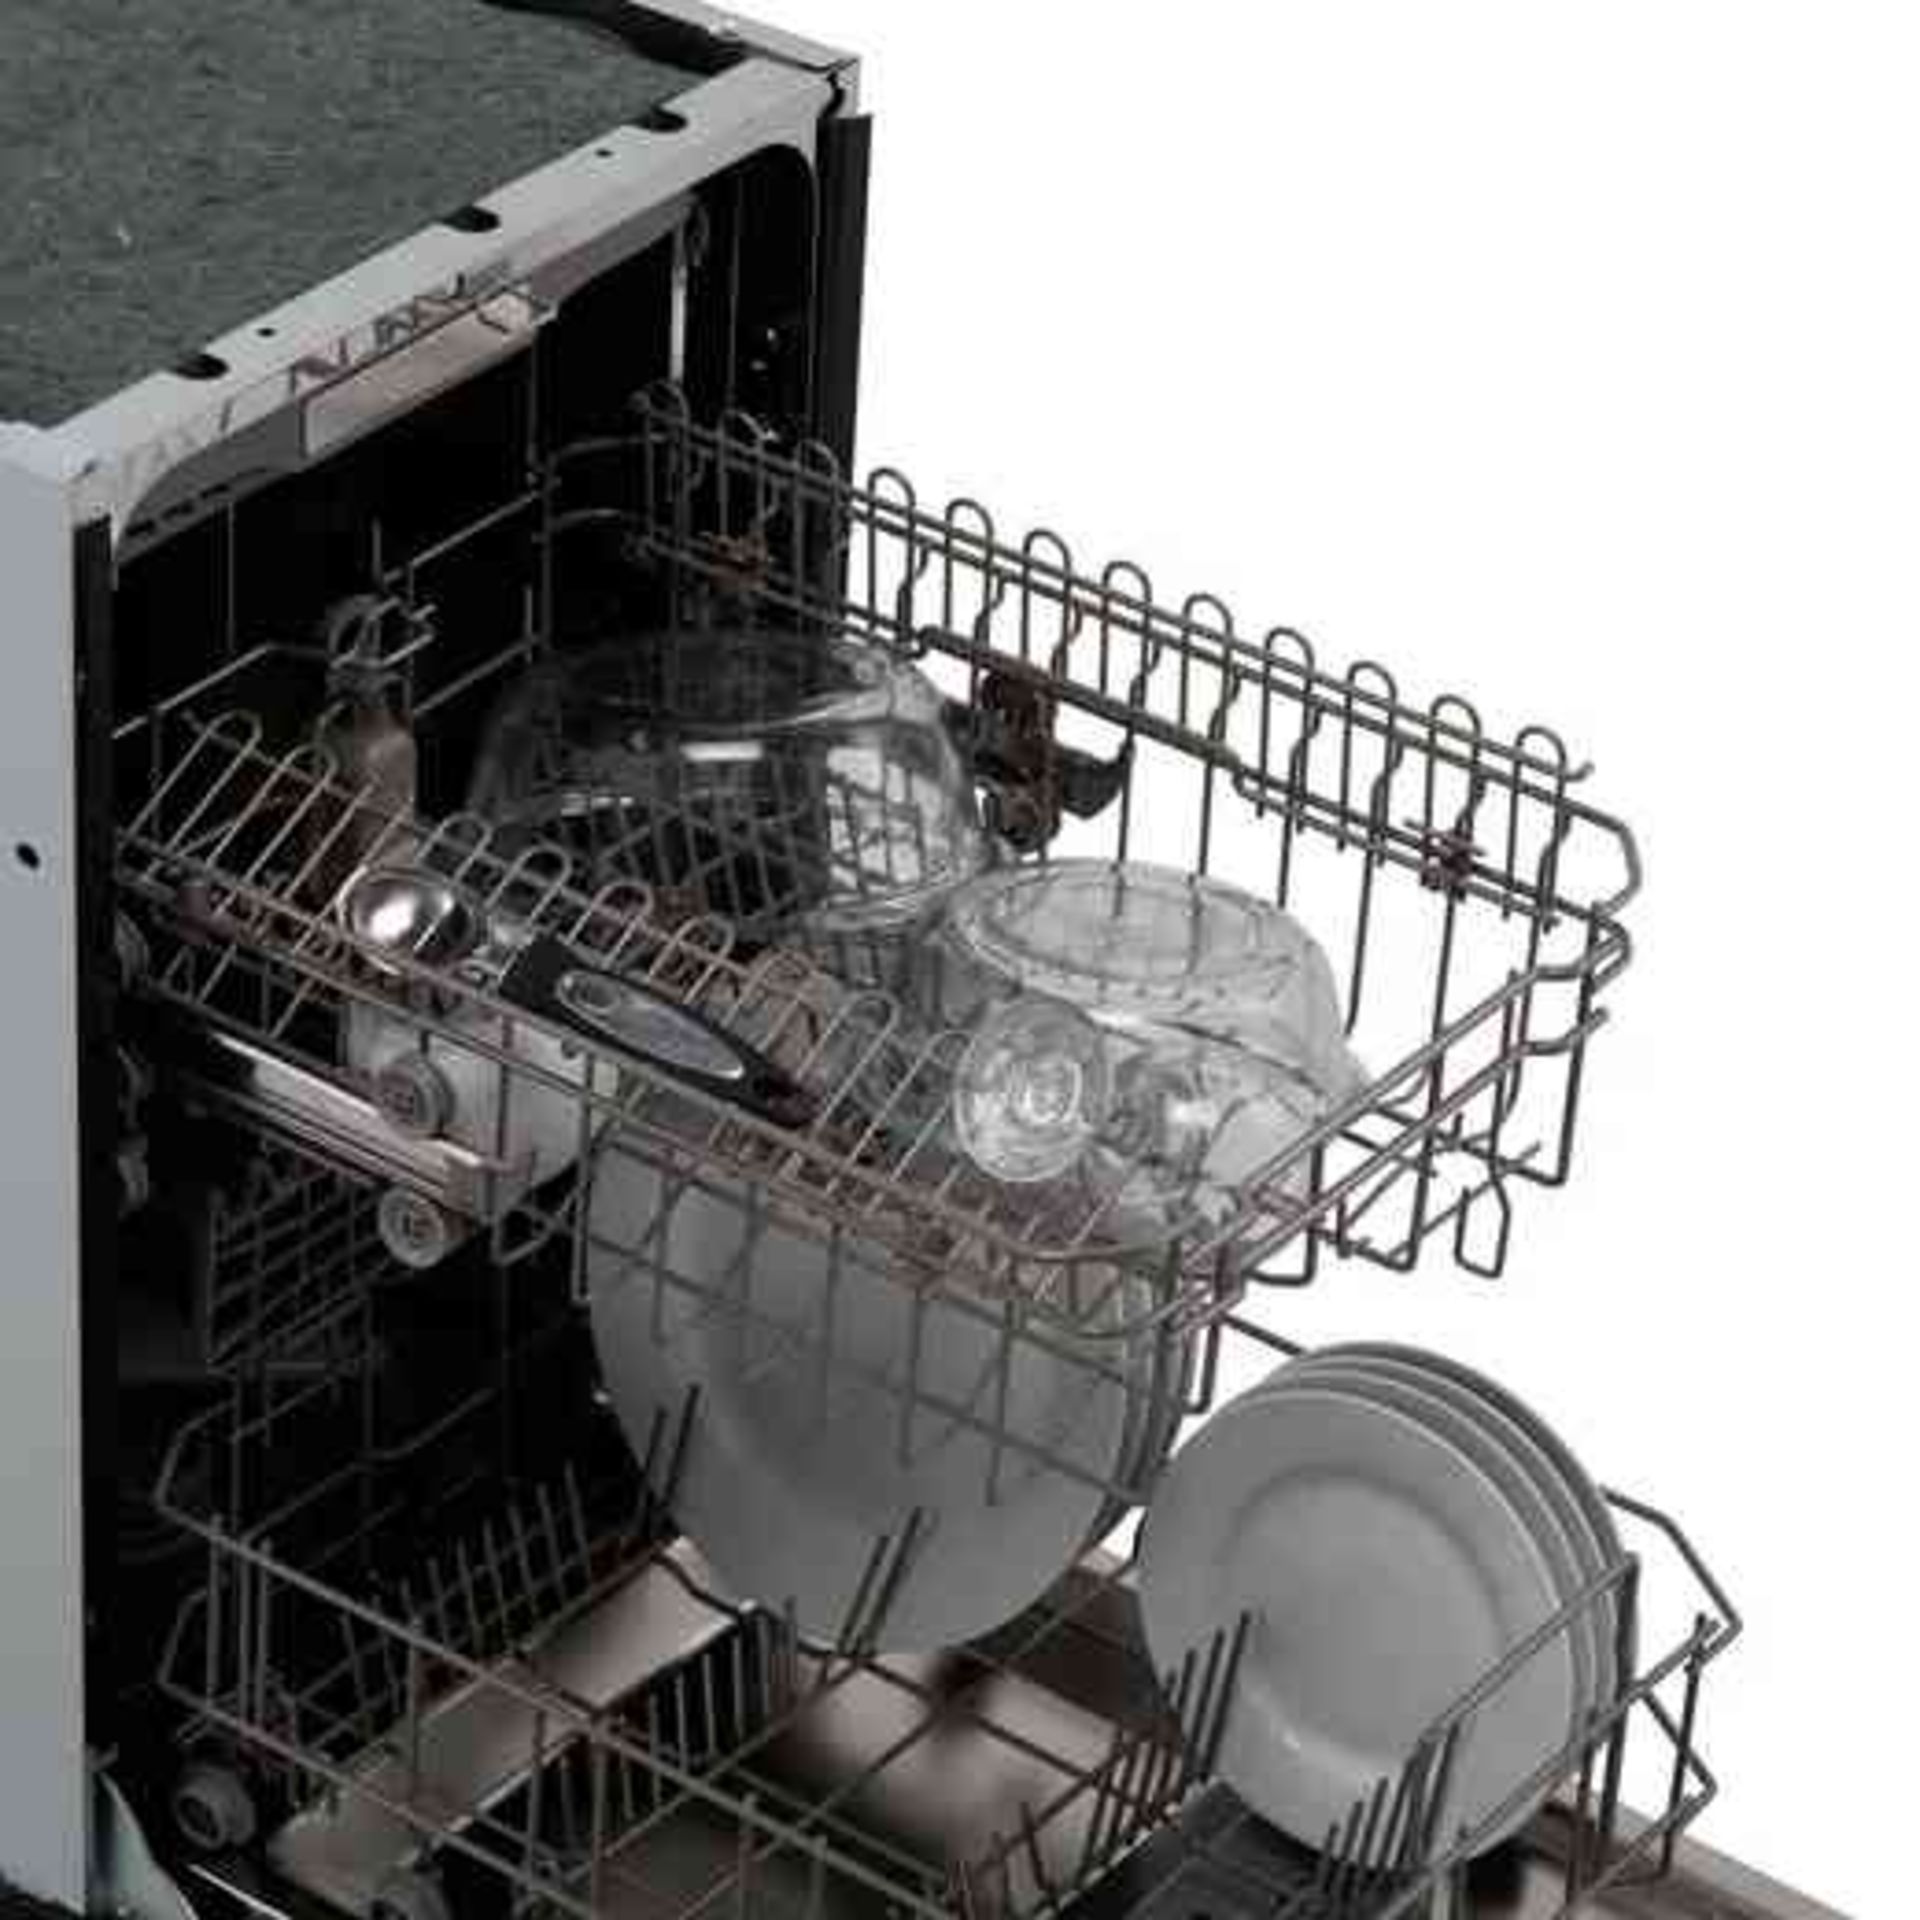 + VAT Grade B ISP £299 - Hisense HV520E40Uk Fully Intergrated Slimline Dishwasher - 11 Place - Image 3 of 3